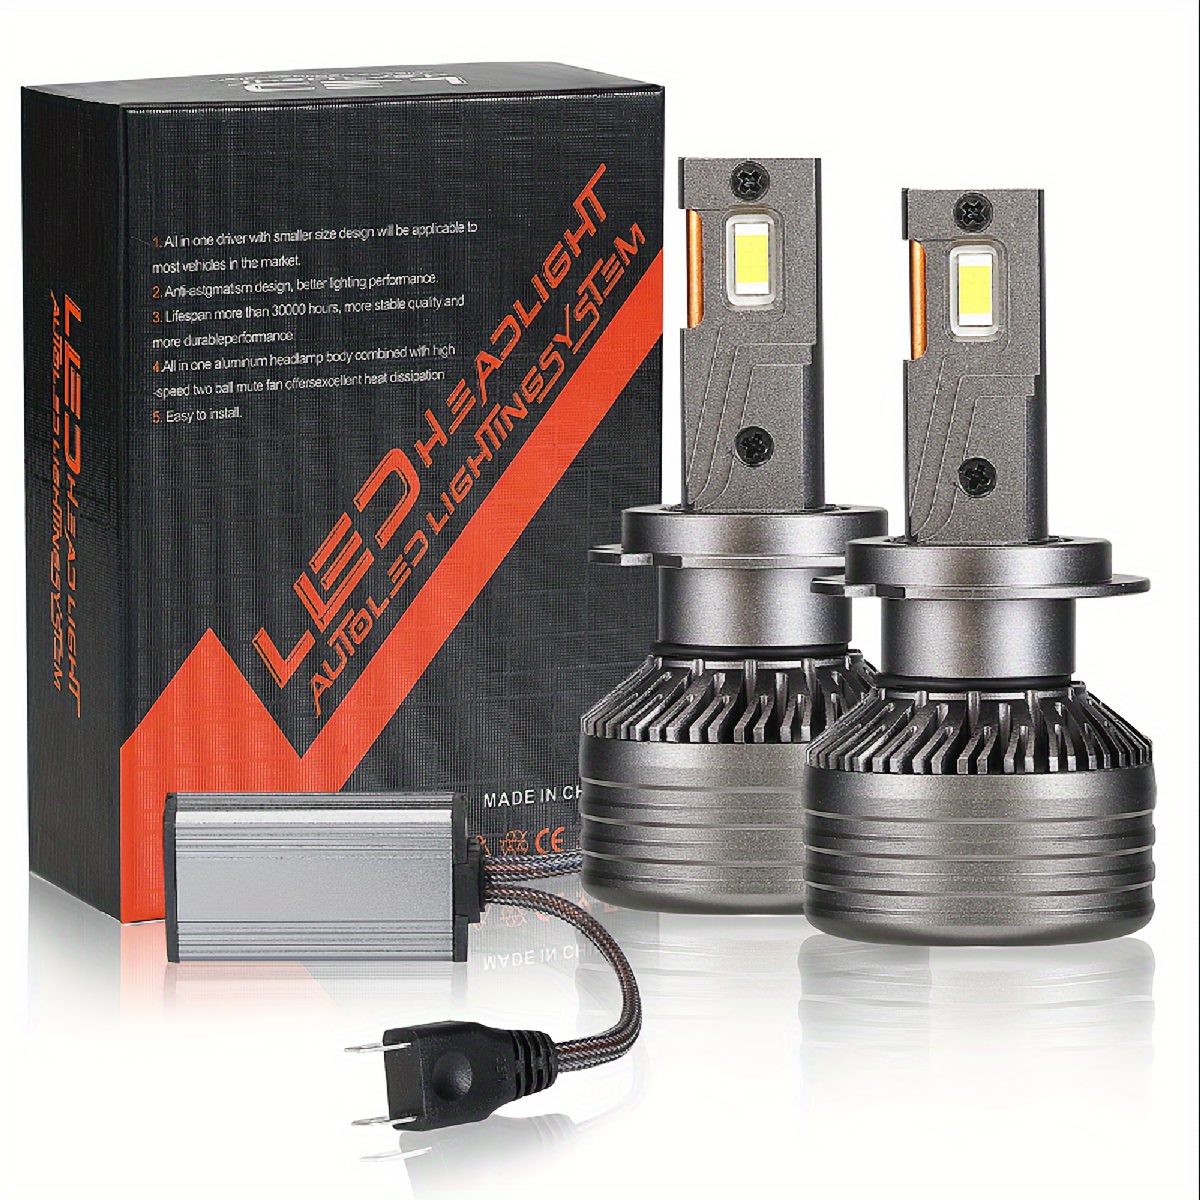  Bombilla LED H7 para faros delanteros de 140 W, 4300 K, H11,  HB3, 9005, HB4 9006, kit de luz LED de doble tubo de cobre compatible con  automóvil de 12 V